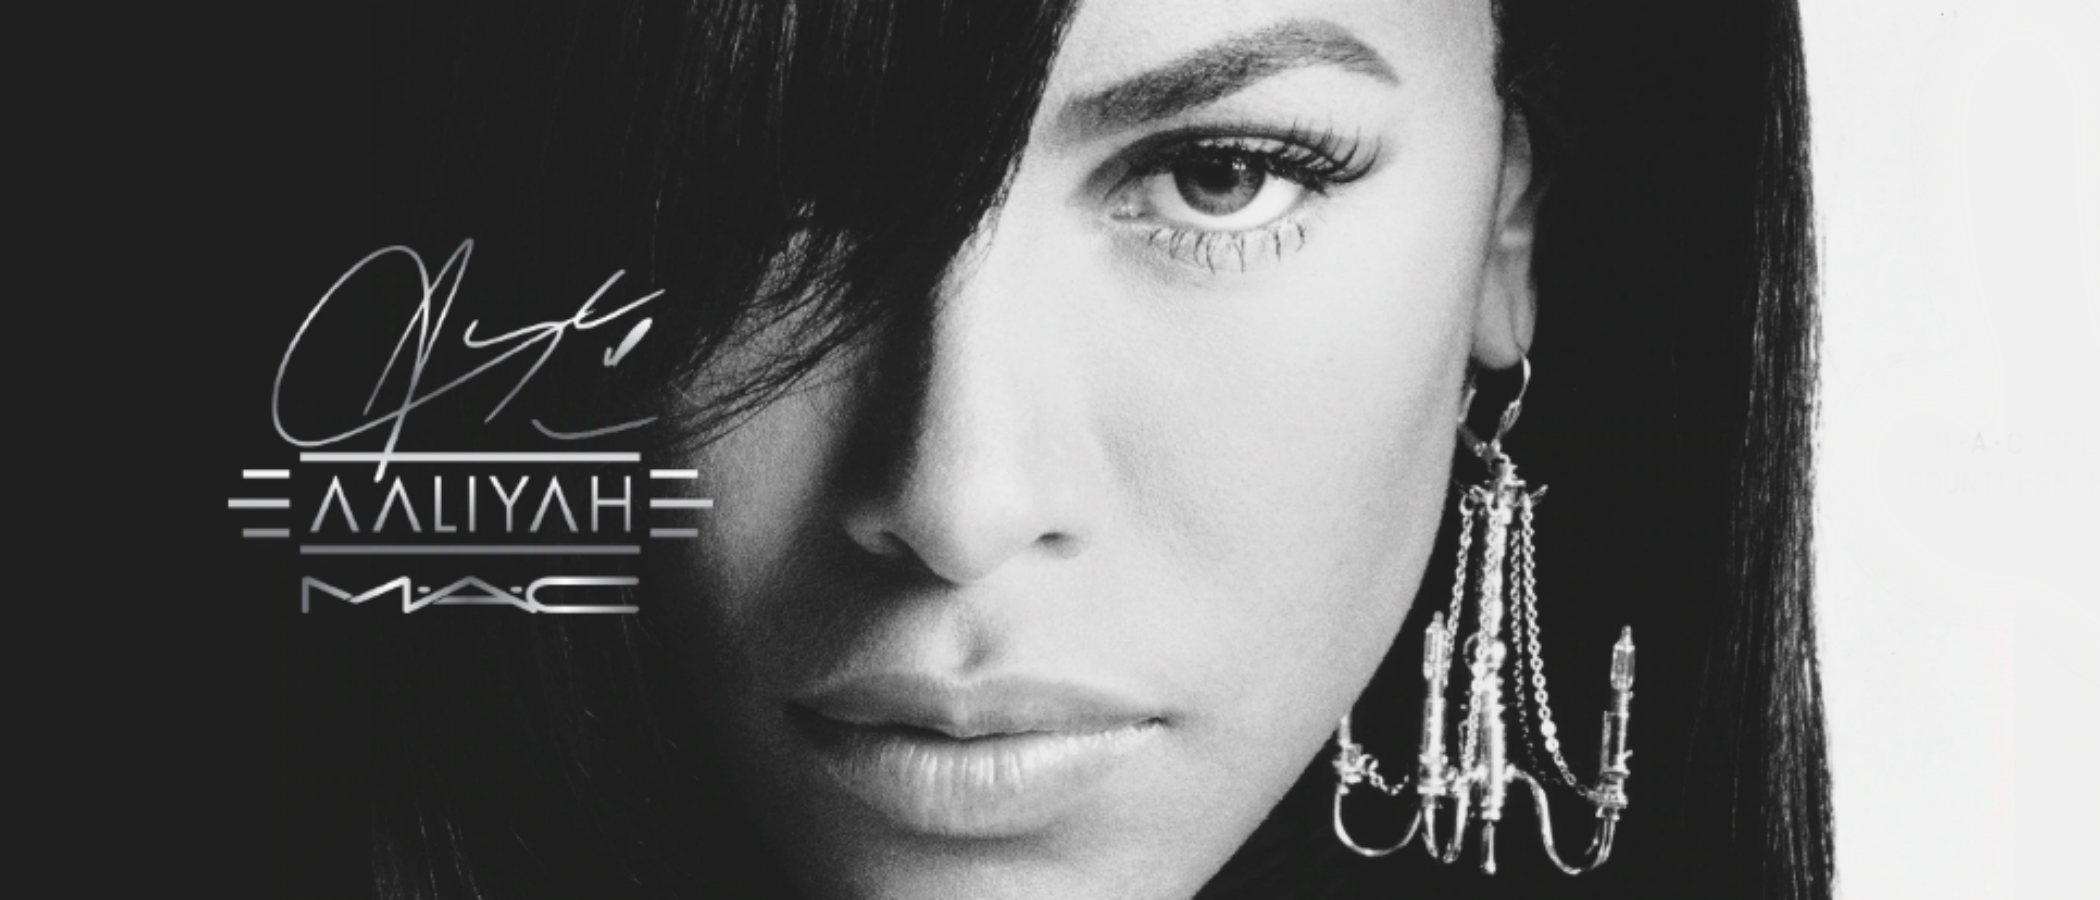 'MAC x Aaliyah', la esperada colección de maquillaje de inspiración noventera en honor a la fallecida cantante